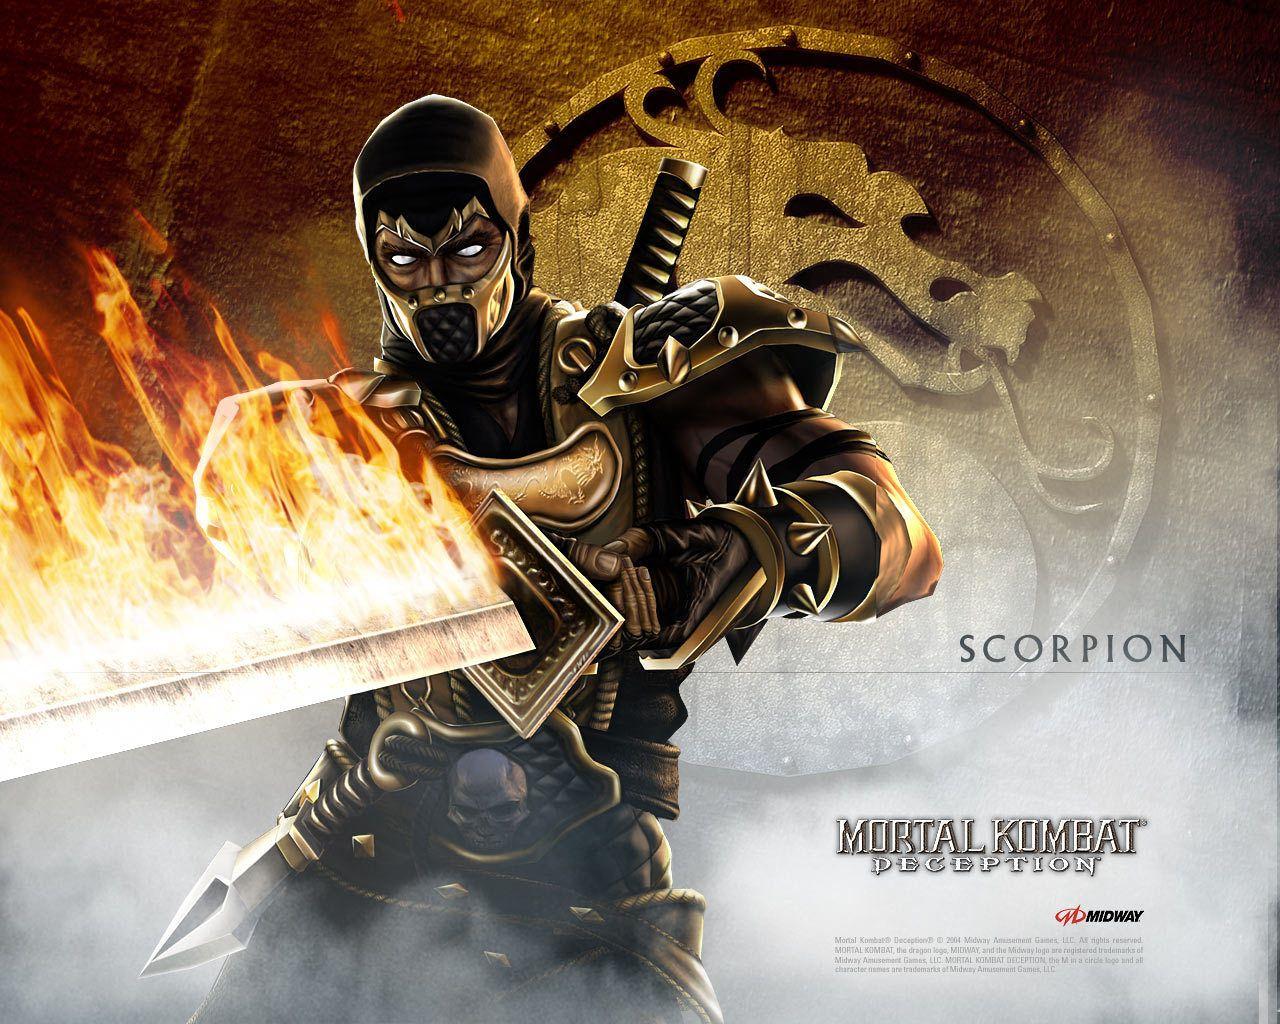 Mortal Kombat image Scorpion HD wallpaper and background photo